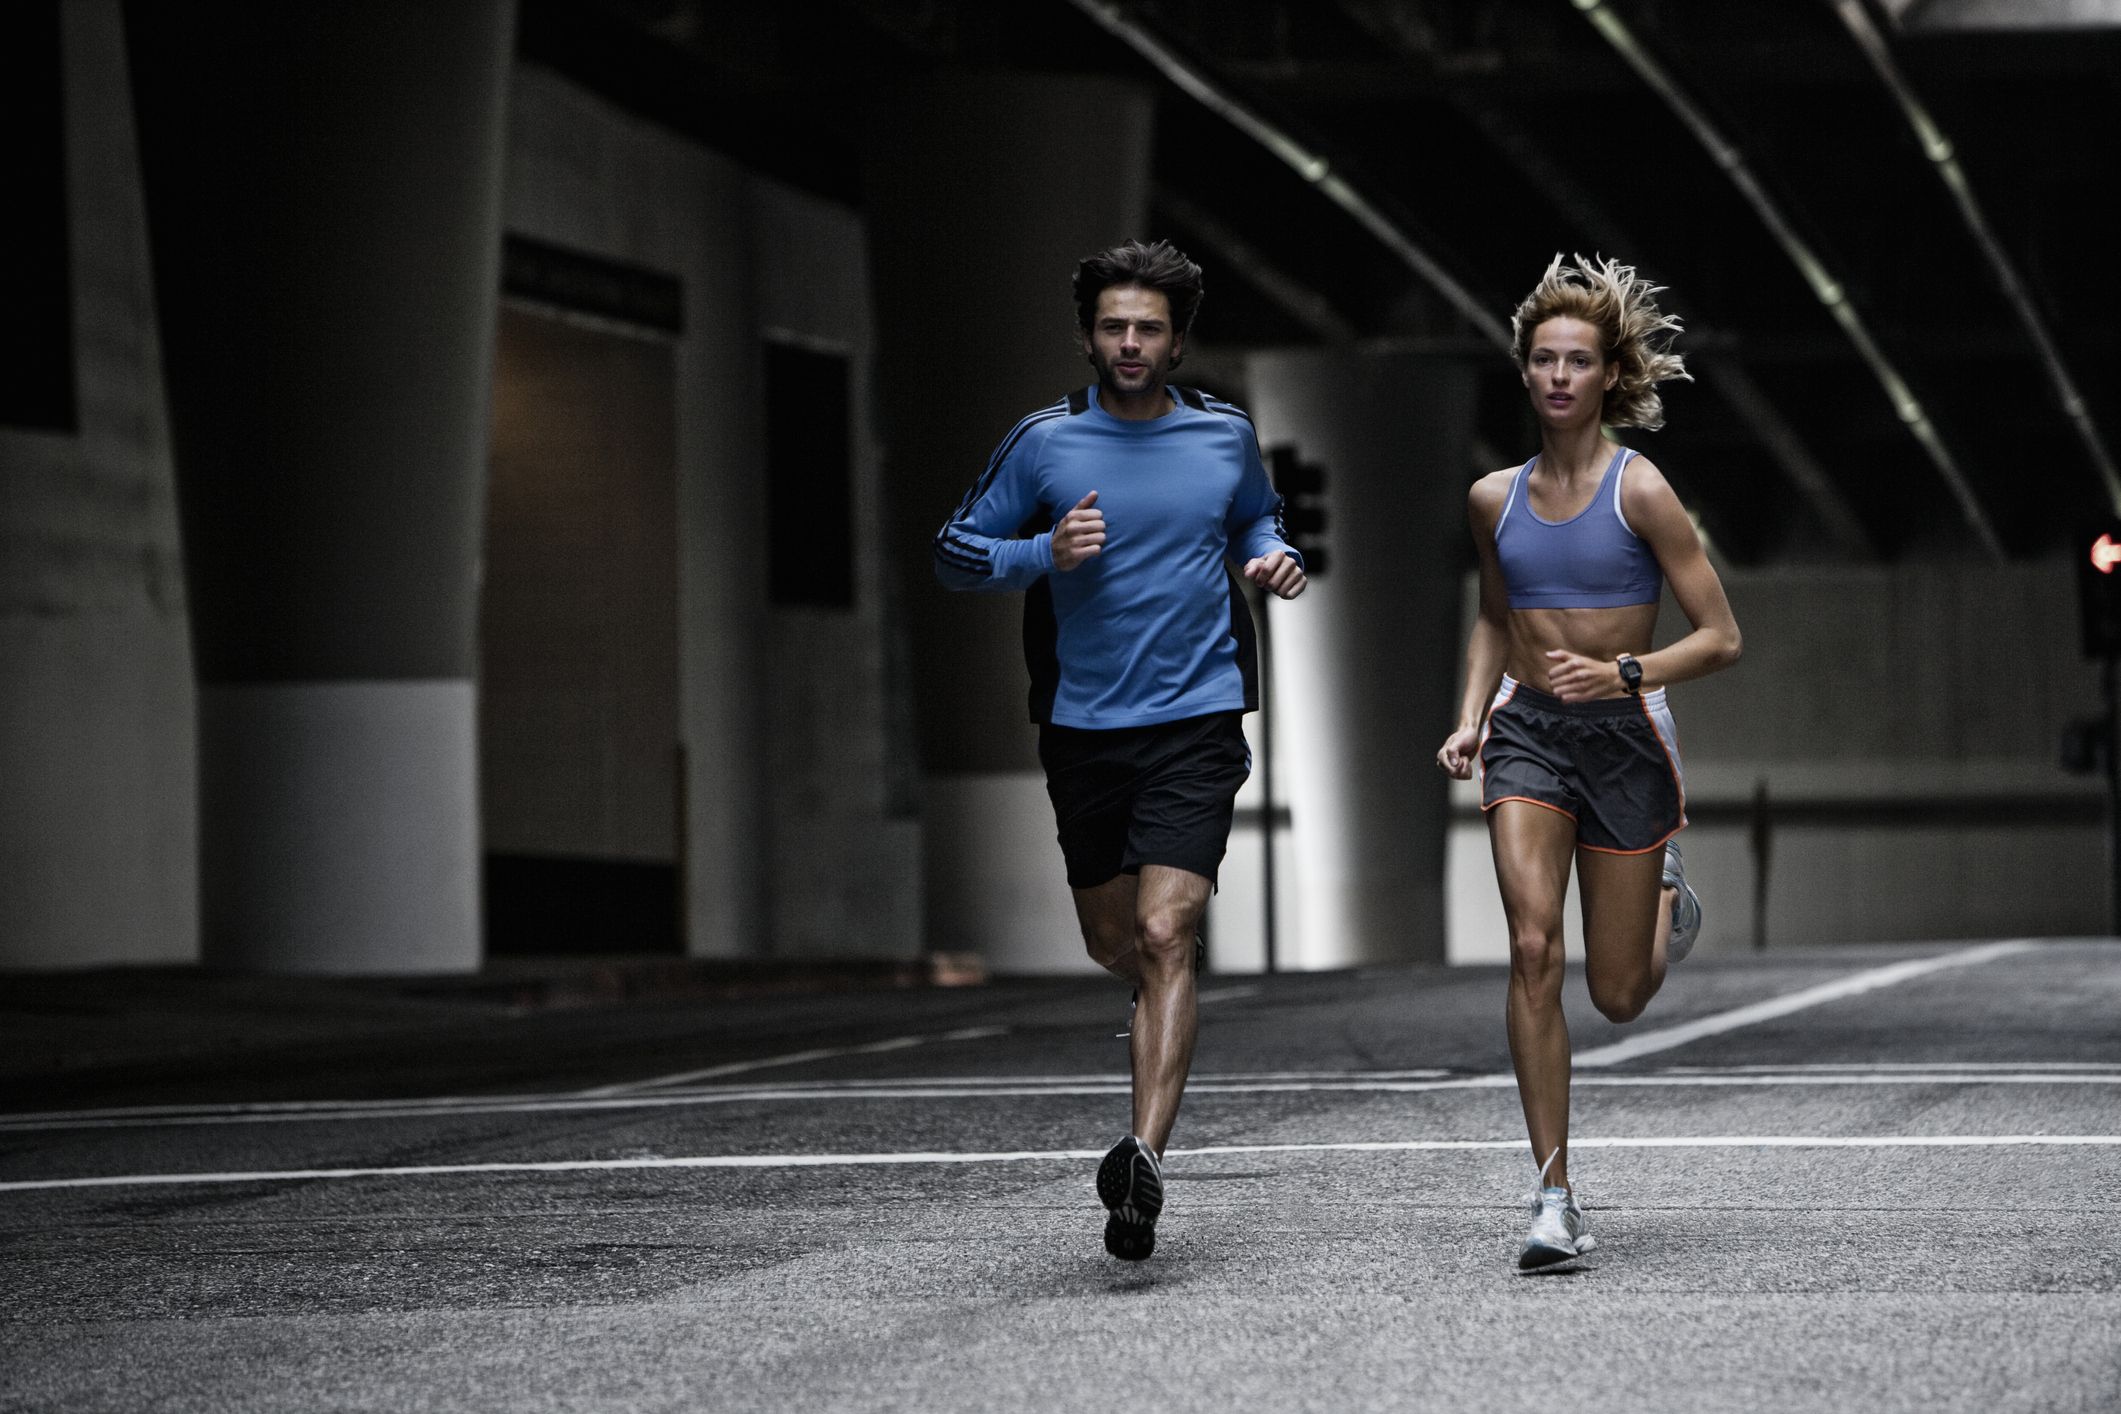 voelen optocht Trots Sneller worden met hardlopen: 15 tips om jouw pr te verbreken